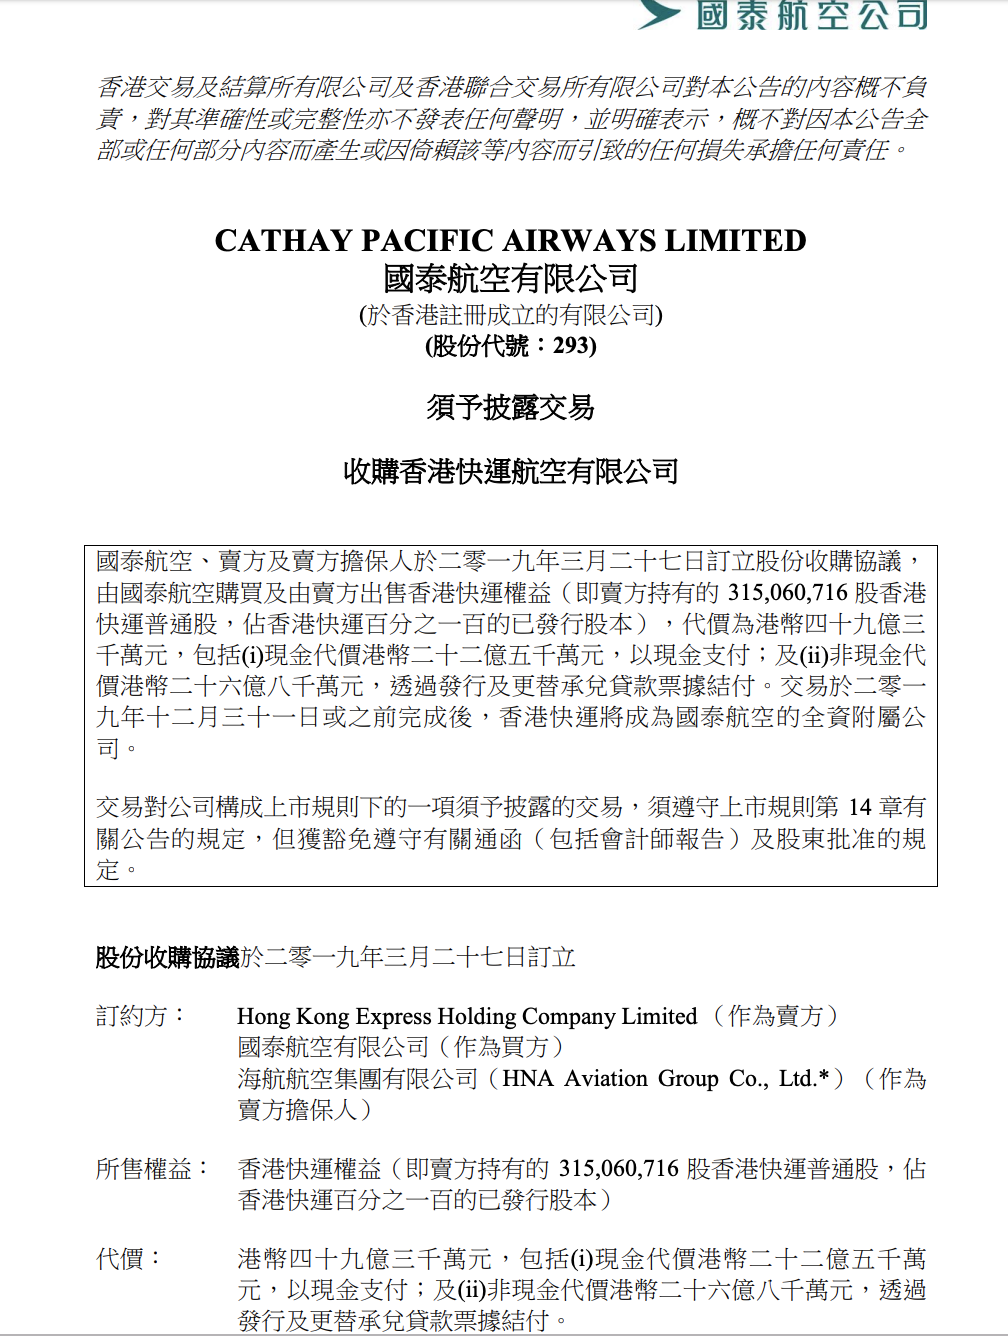 国泰航空49.3亿港元收购香港快运 拟以廉价航